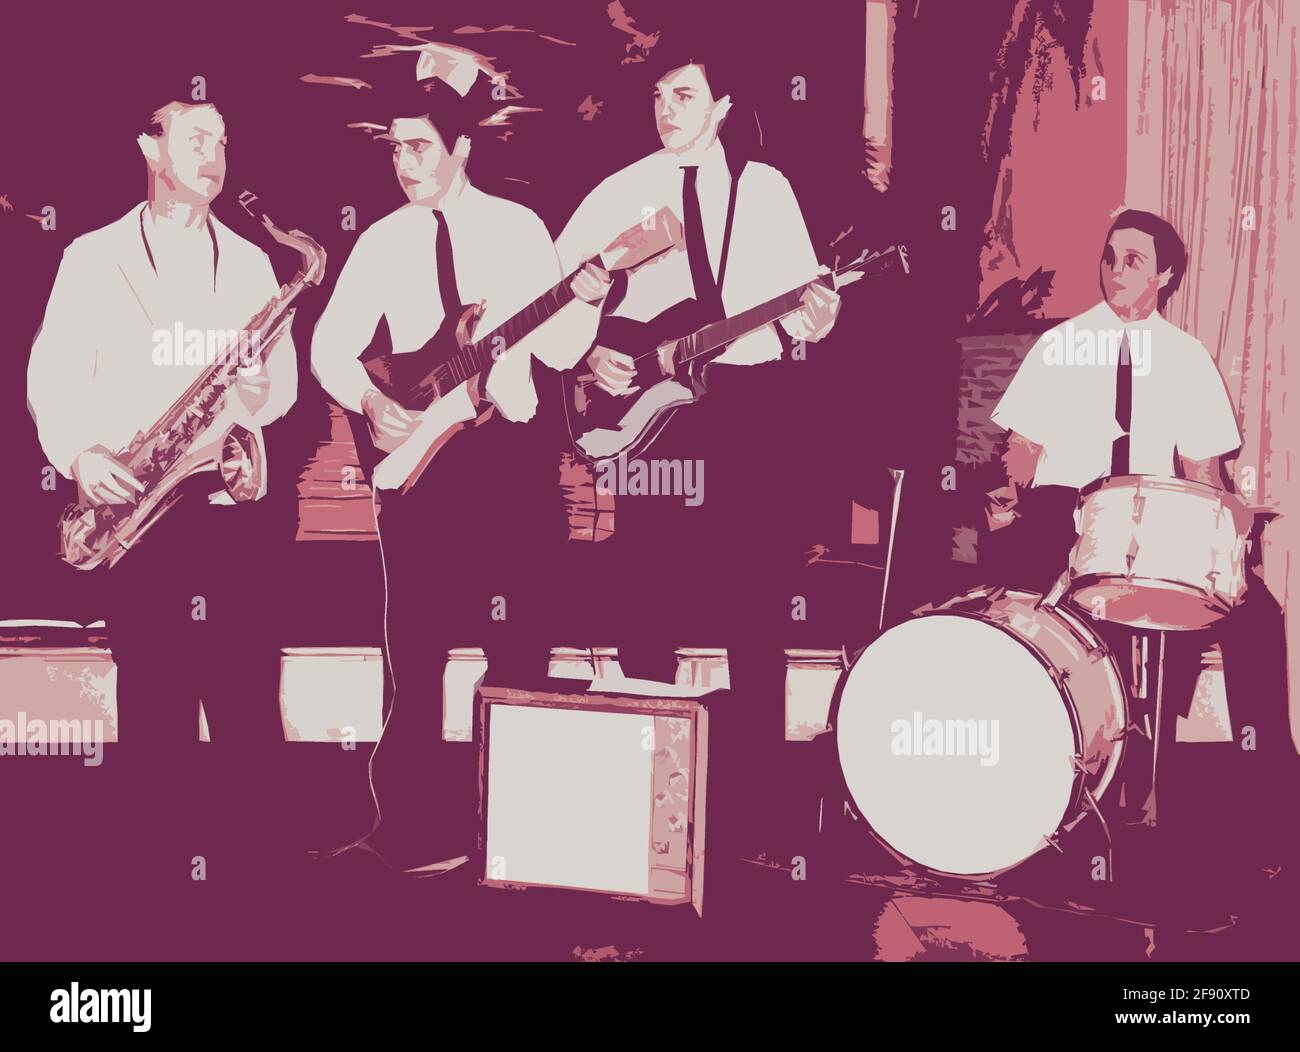 Una fotografia vintage della fine degli anni '50 o dei primi anni '60 di una rock and roll band universitaria che gioca per un promo colorito digitalmente e alterato per effetto artistico. Foto Stock